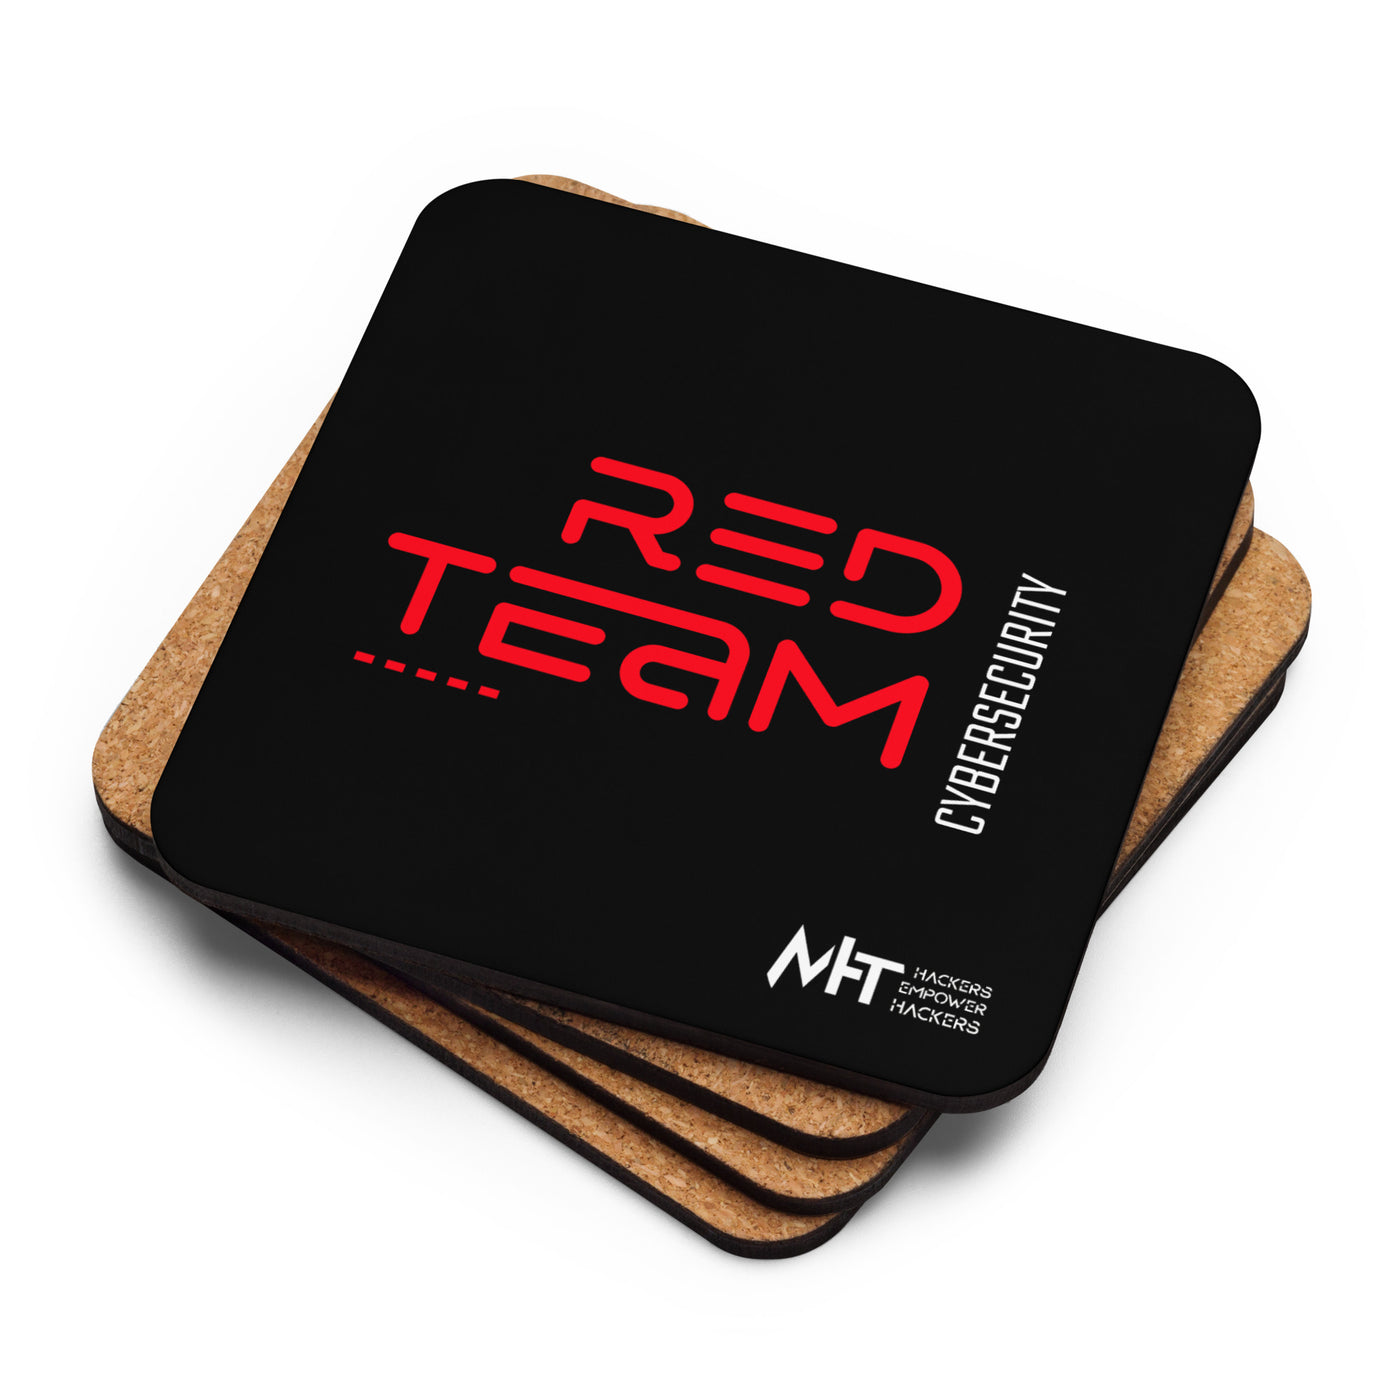 Cyber Security Red Team V11 - Cork-back coaster